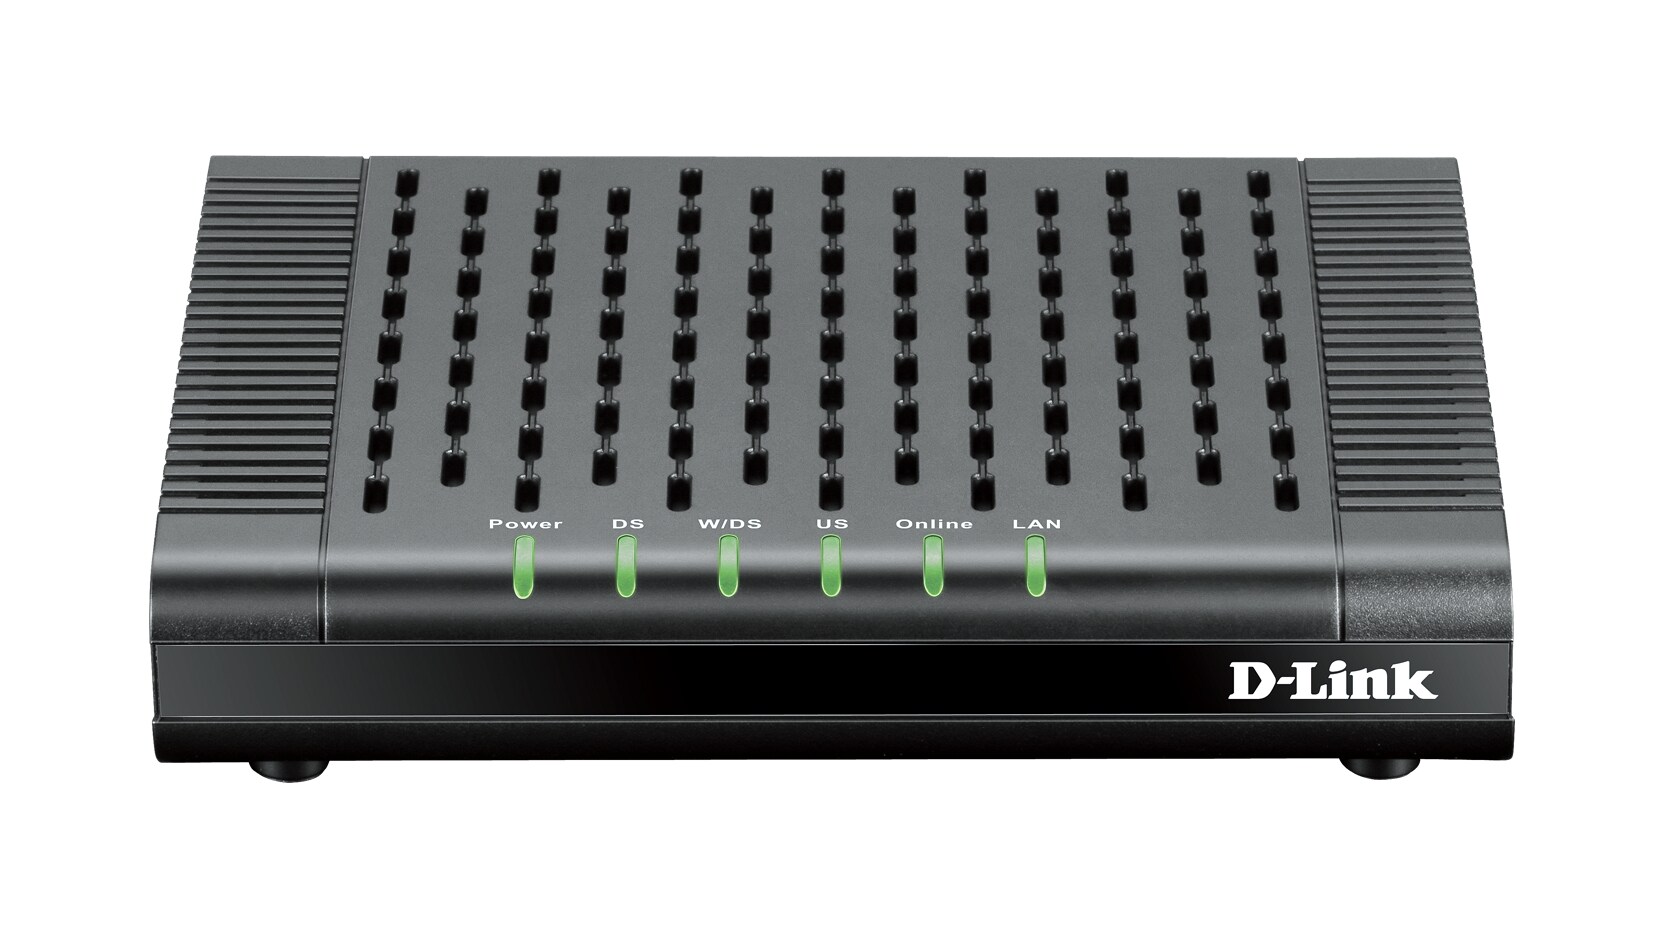 D-Link DCM 301 - cable modem